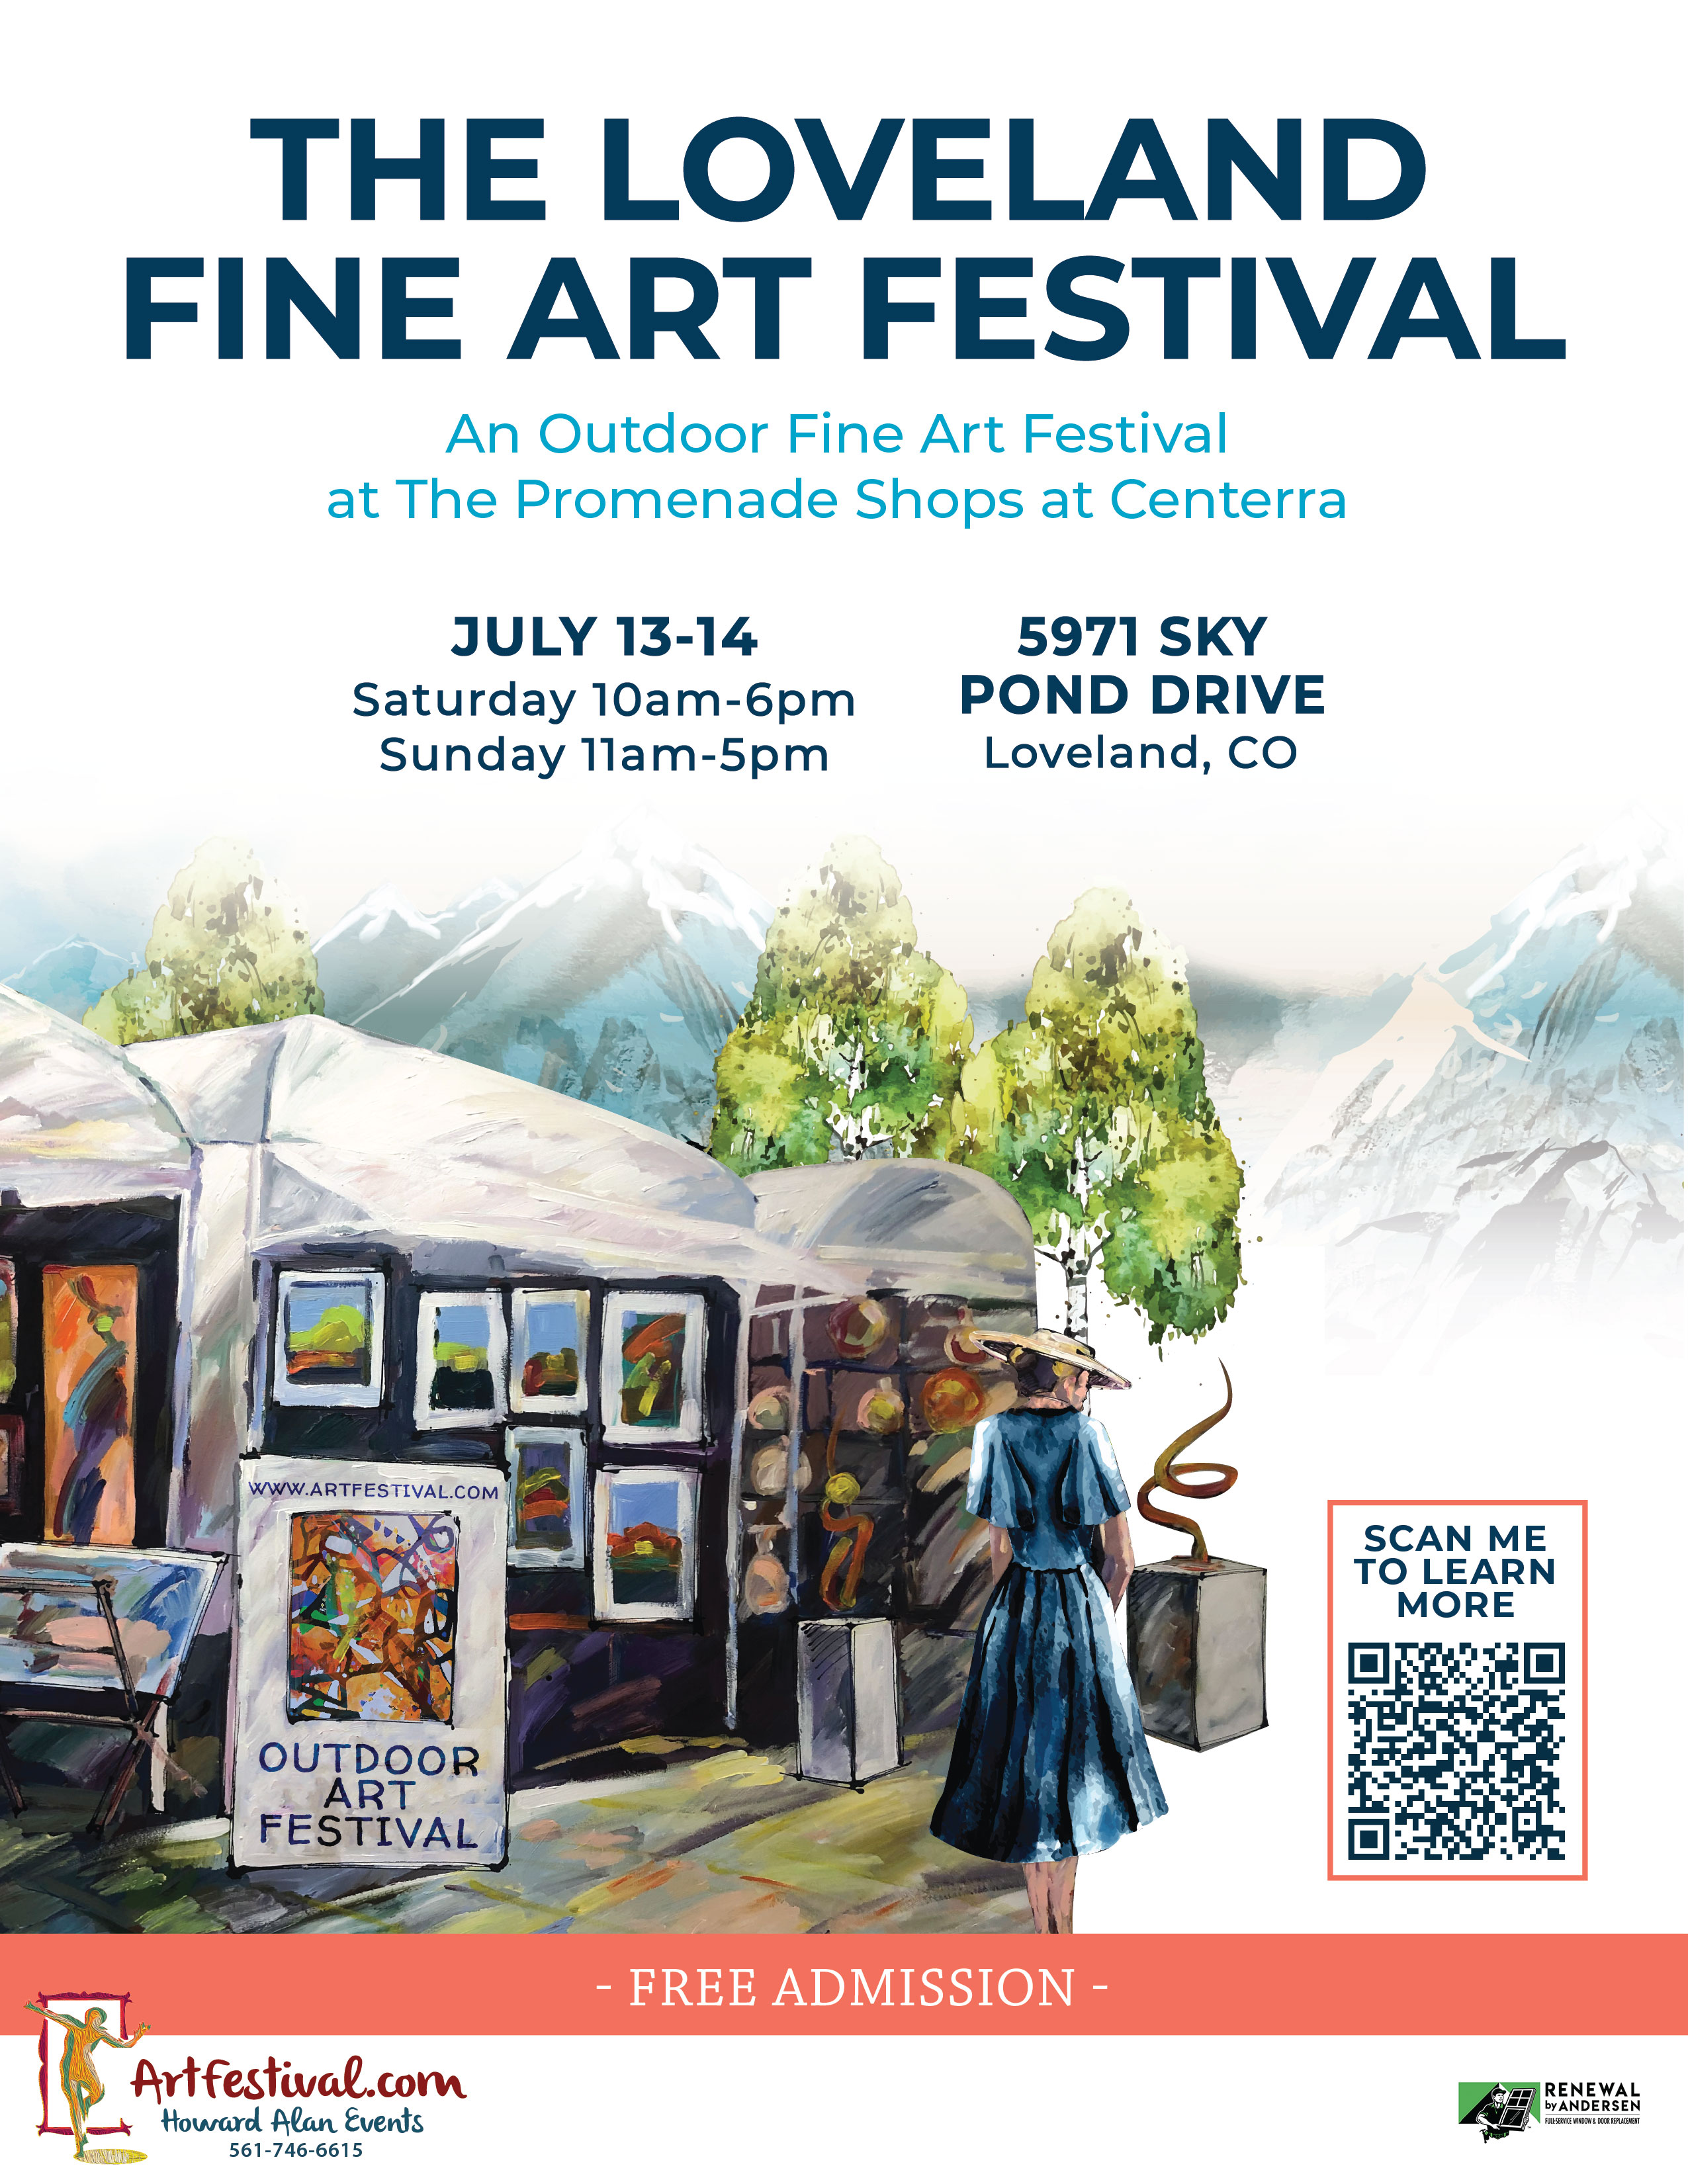 The Loveland Fine Art Festival